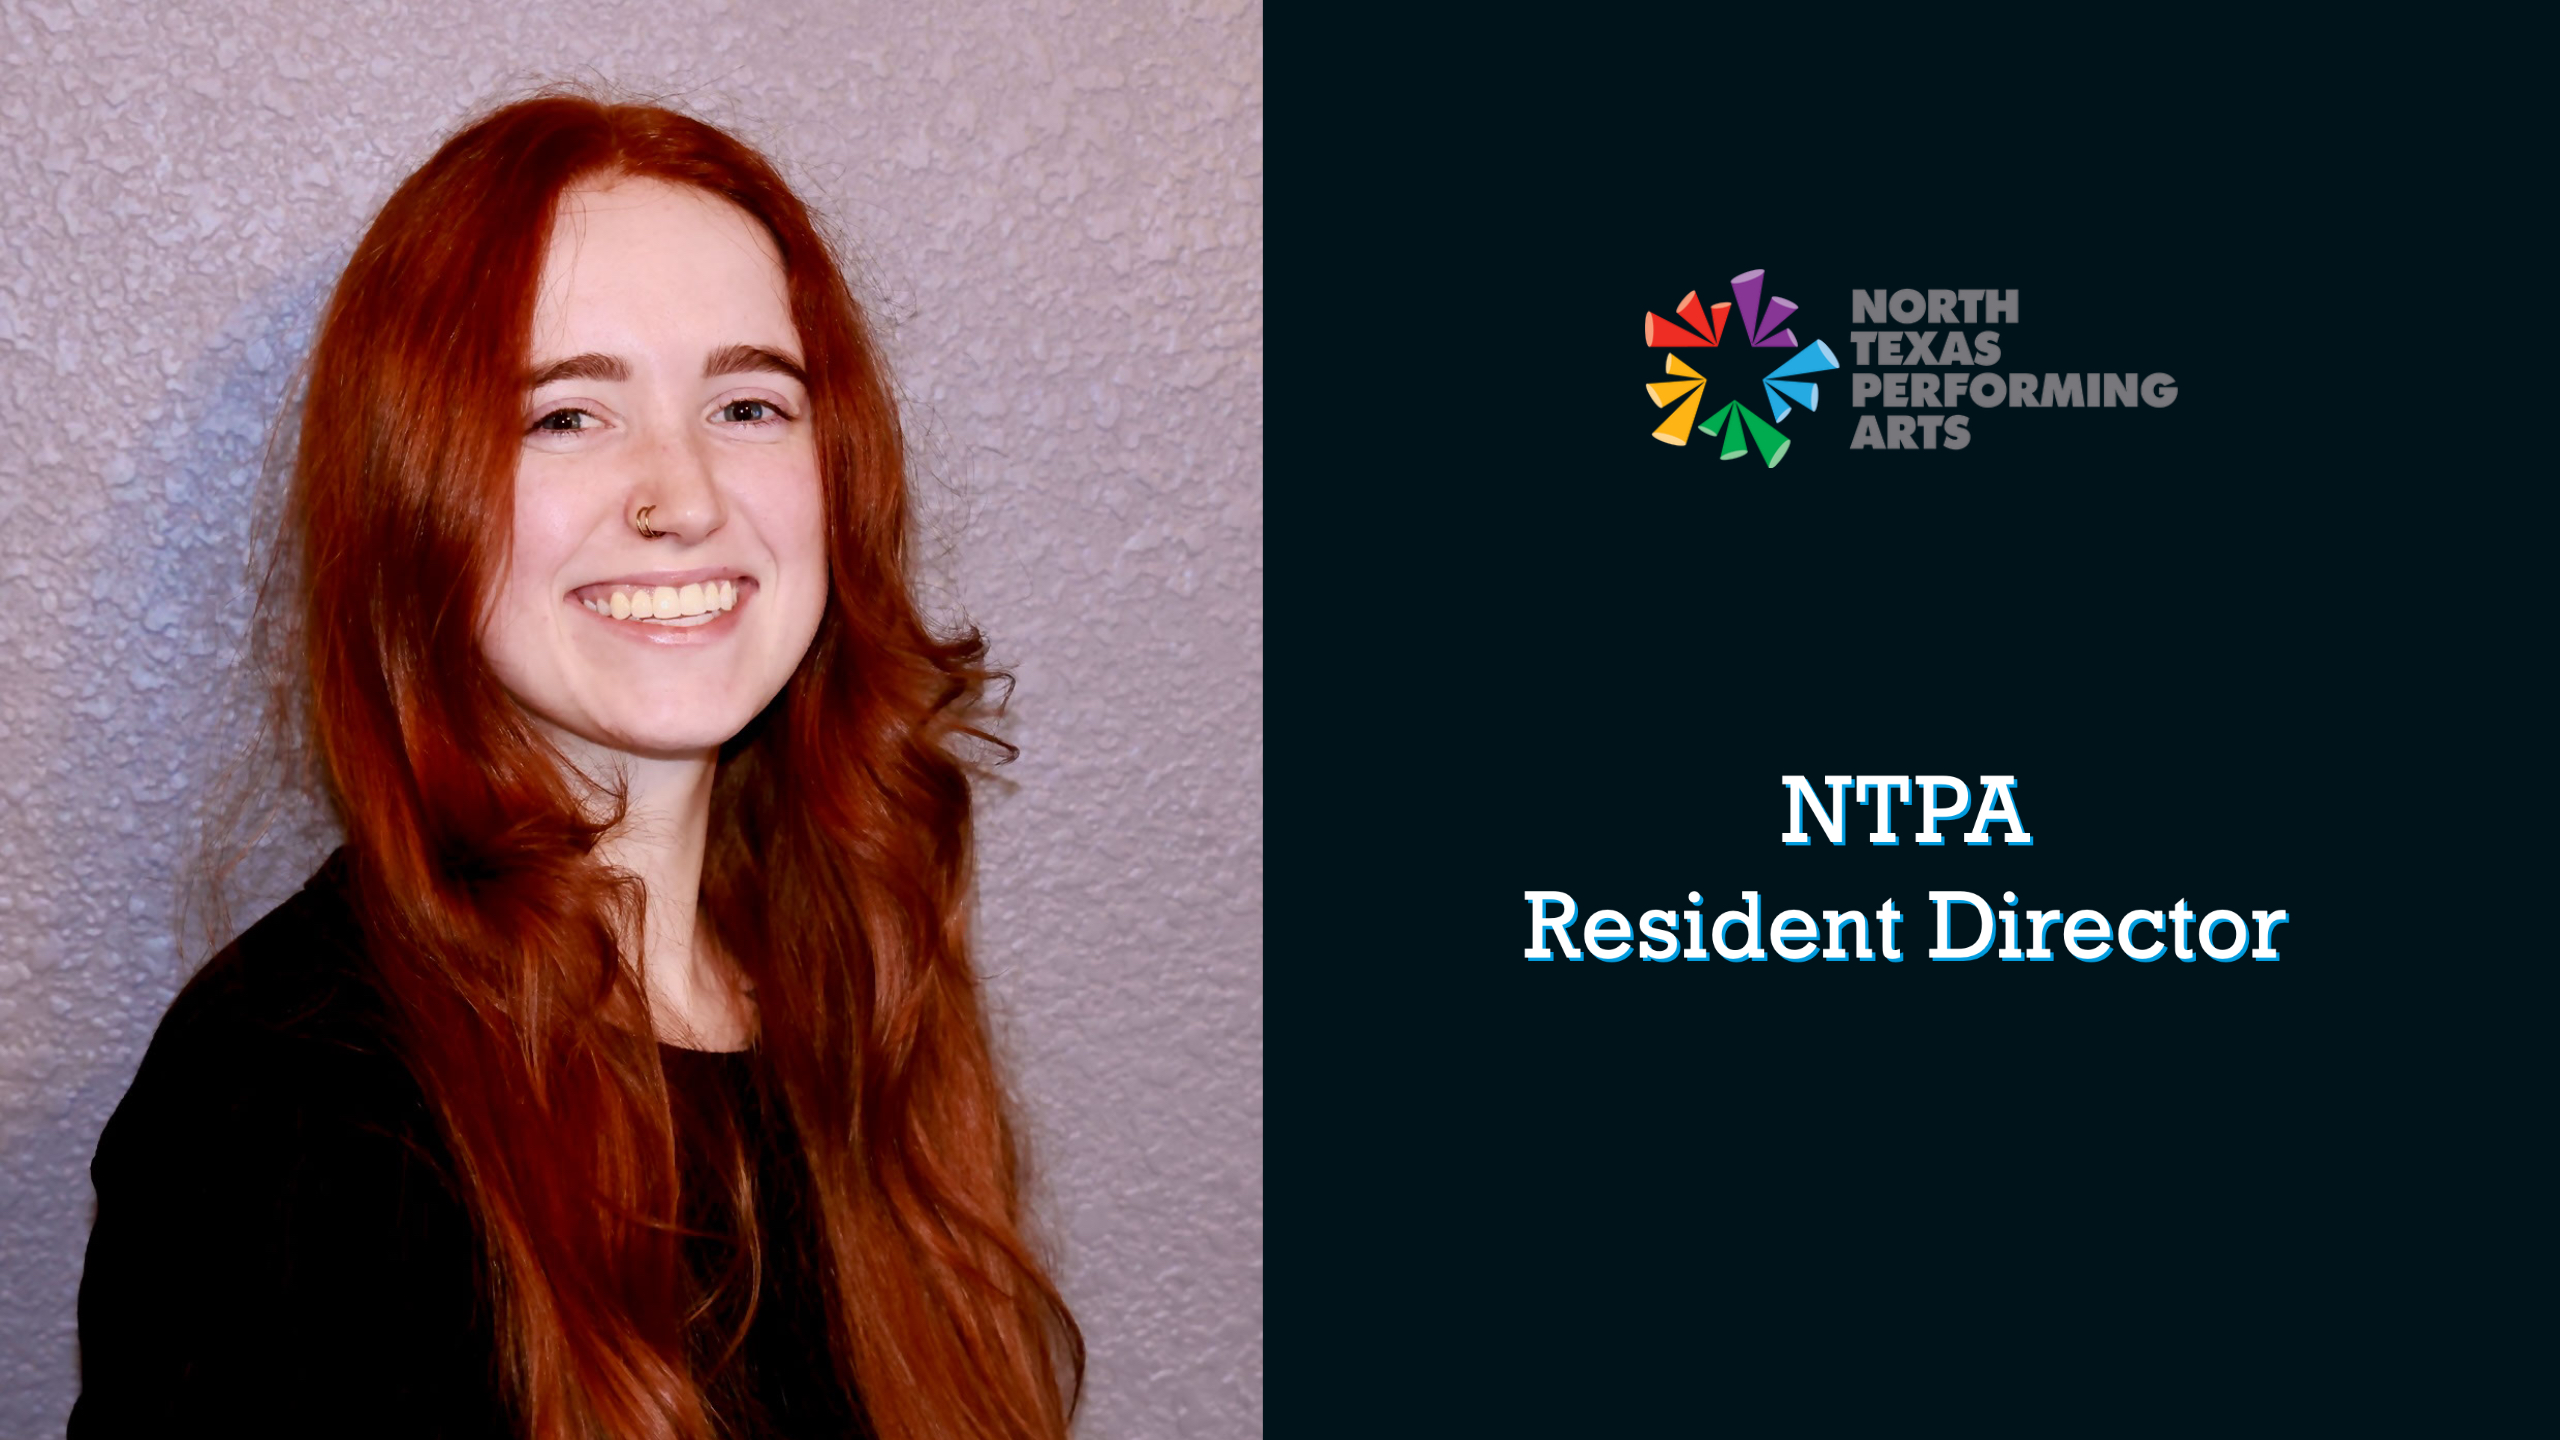 NTPA Announces Marissa Bergere as Resident Director